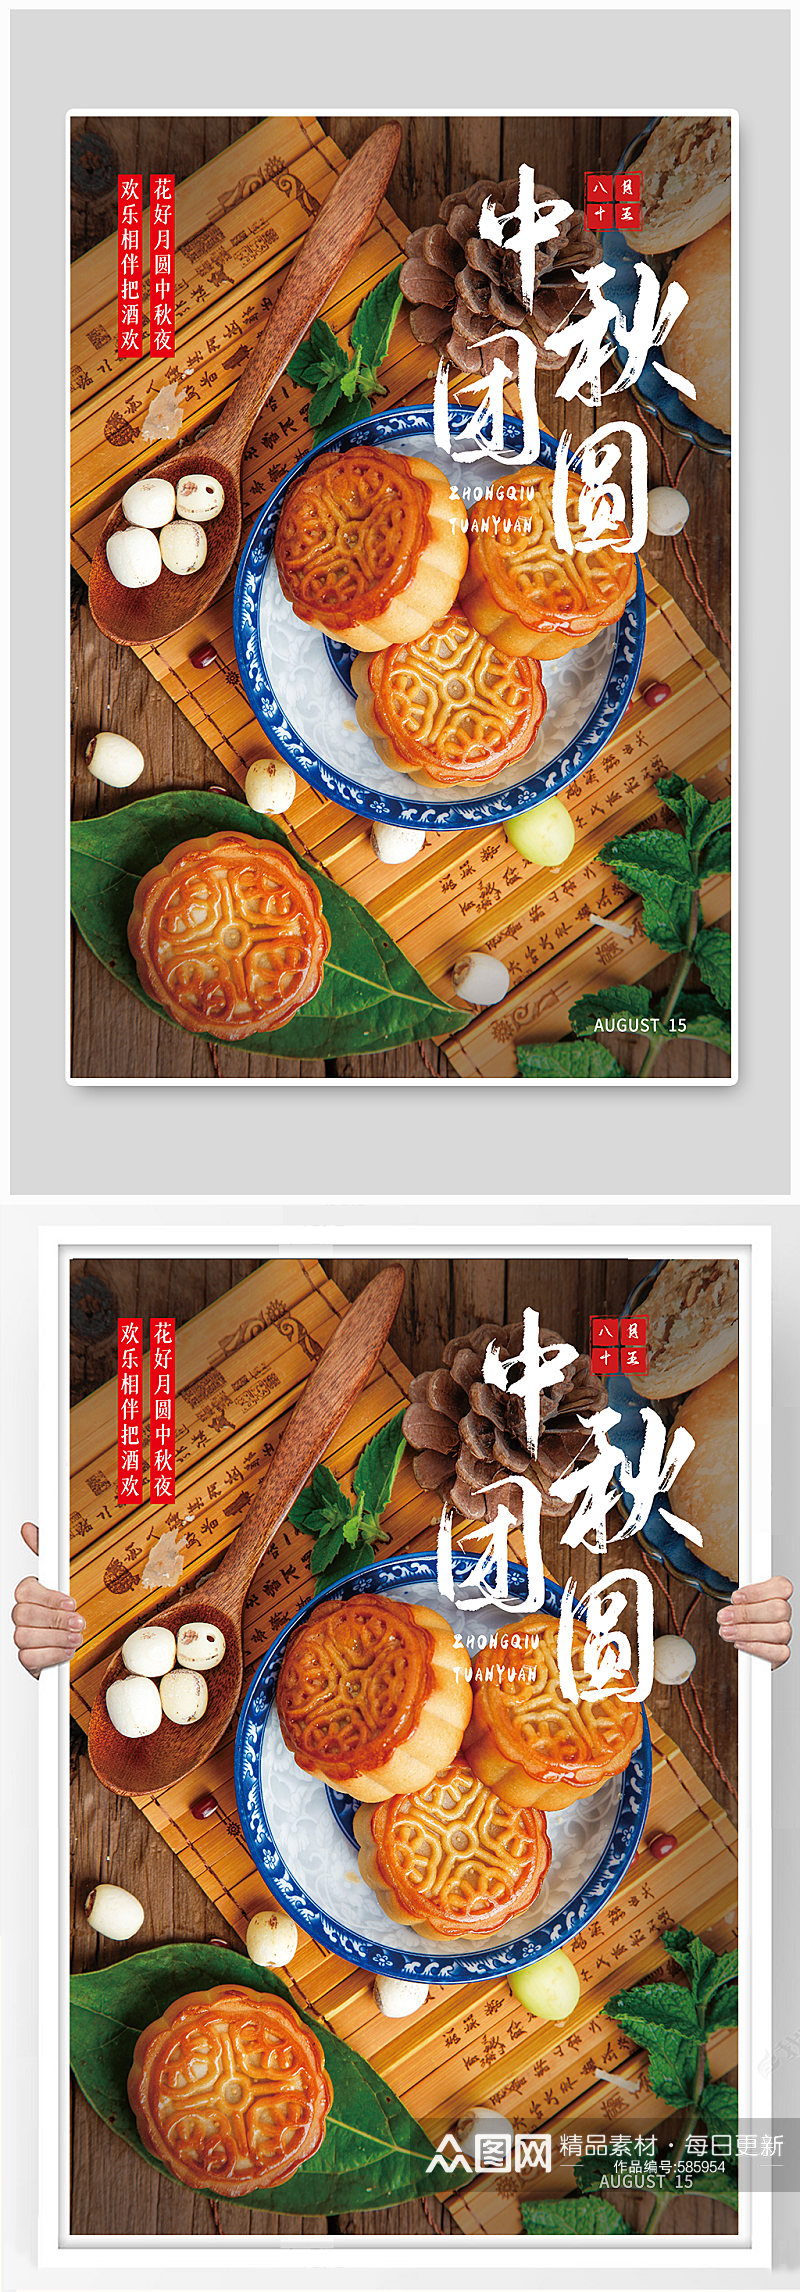 中秋节团圆宣传海报素材